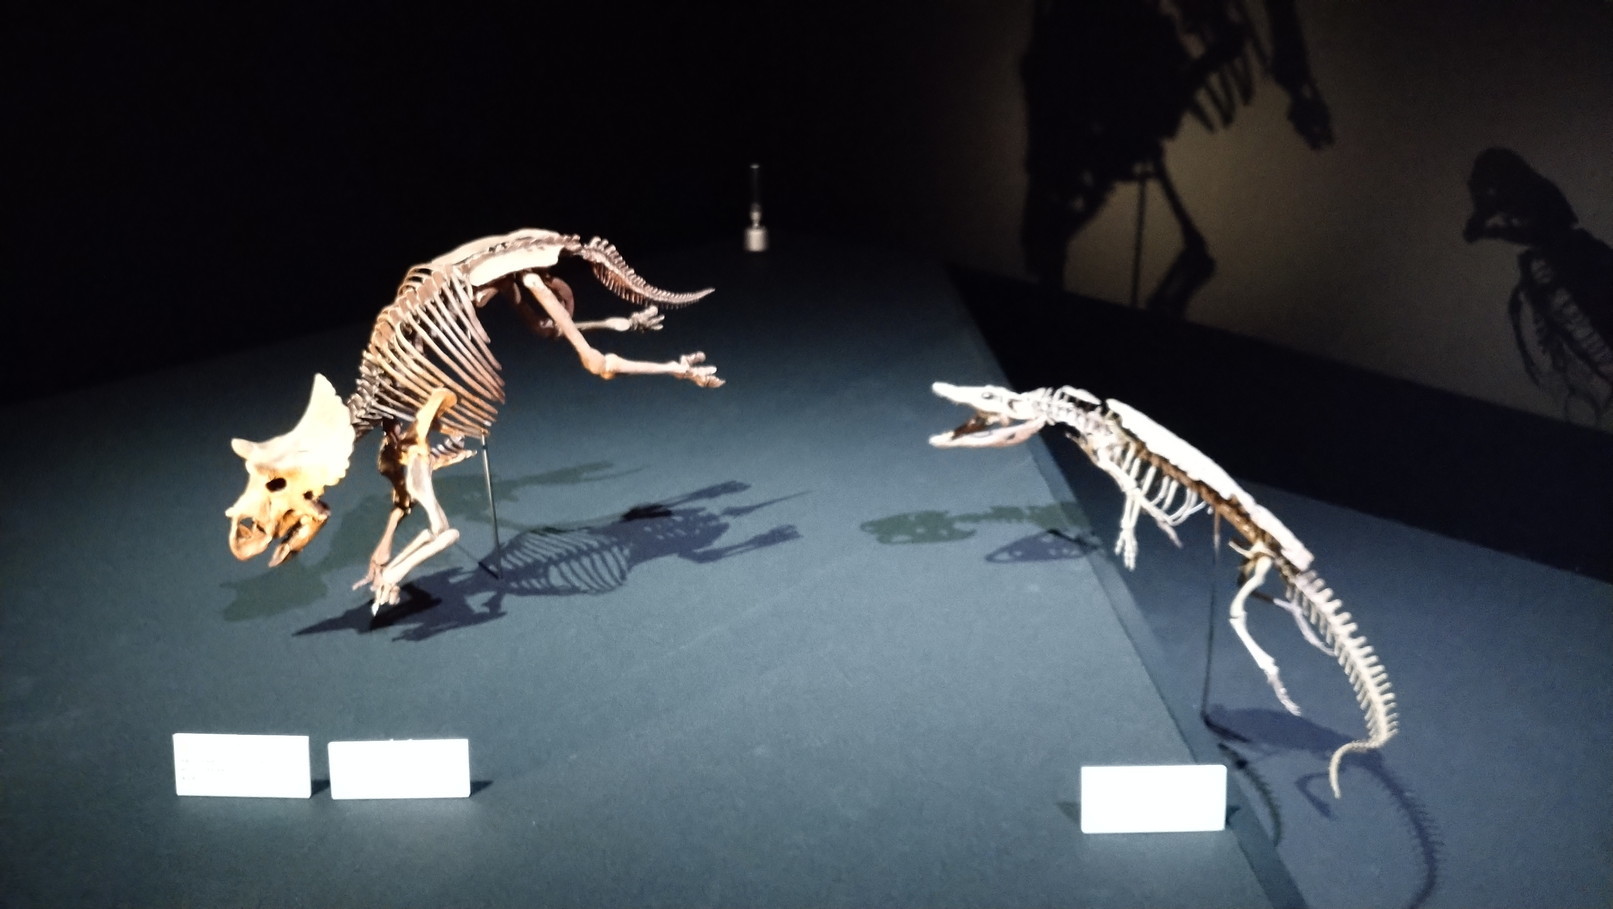 トリケラトプス「レイン」のほぼ完全な全身骨格化石をDinoScience 恐竜科学博 ～ララミディア大陸の恐竜物語～@パシフィコ横浜でみた！_c0002171_00165458.jpg